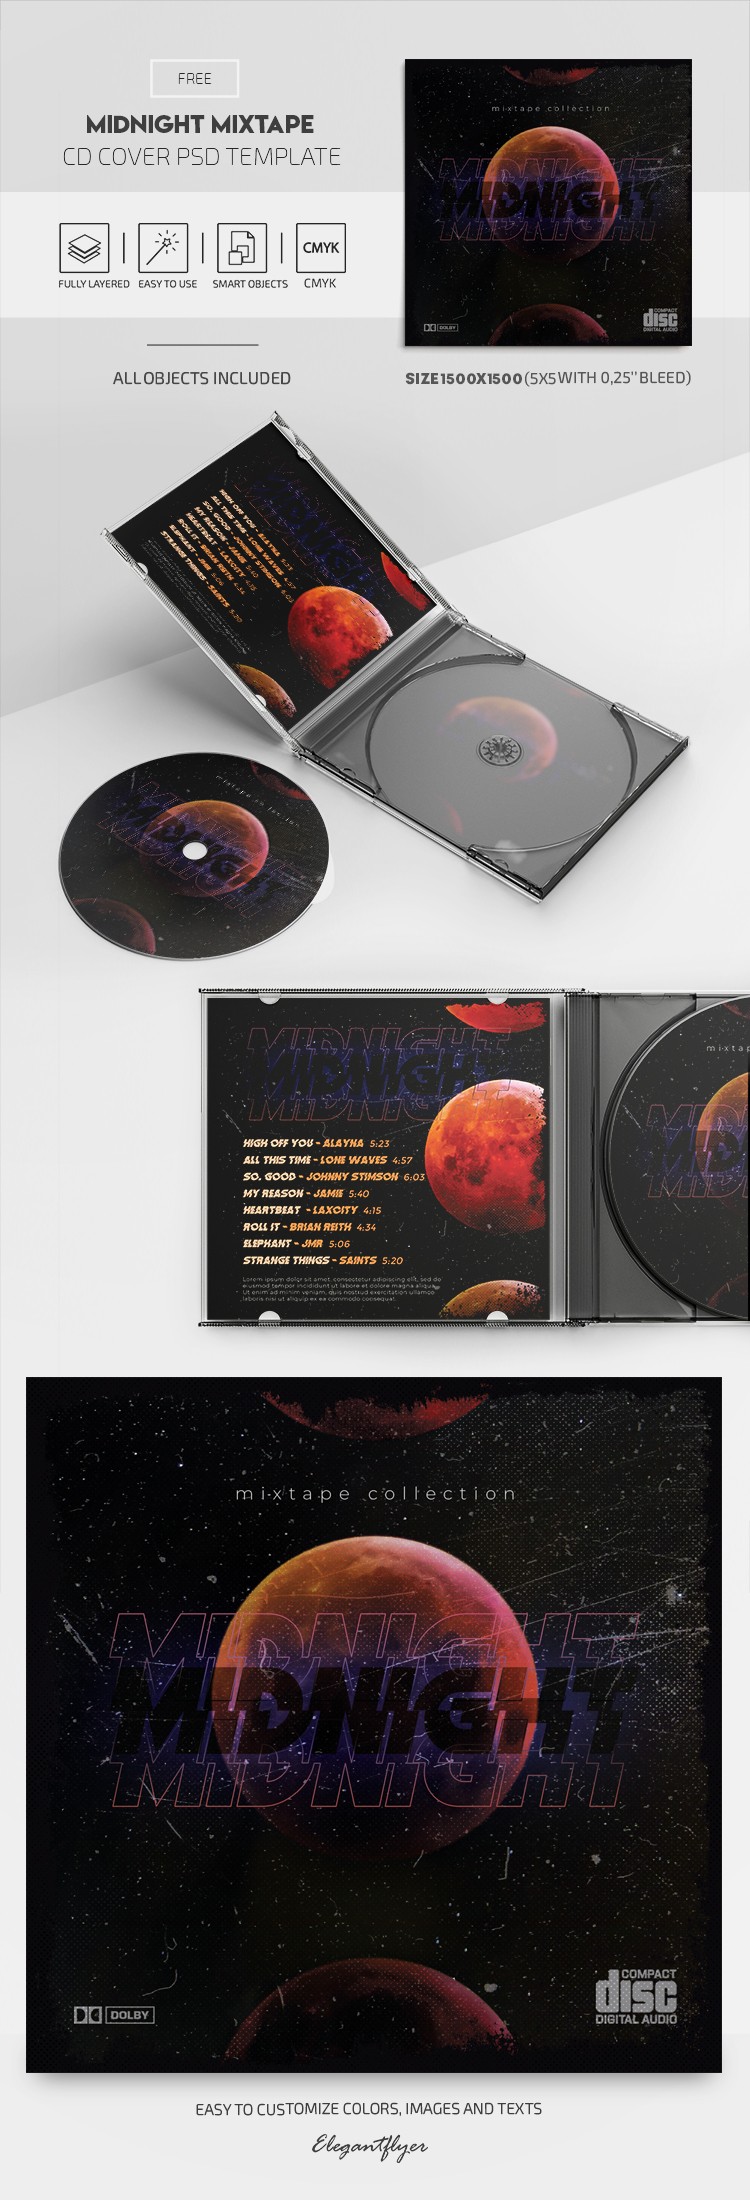 Capa do CD Midnight Mixtape by ElegantFlyer